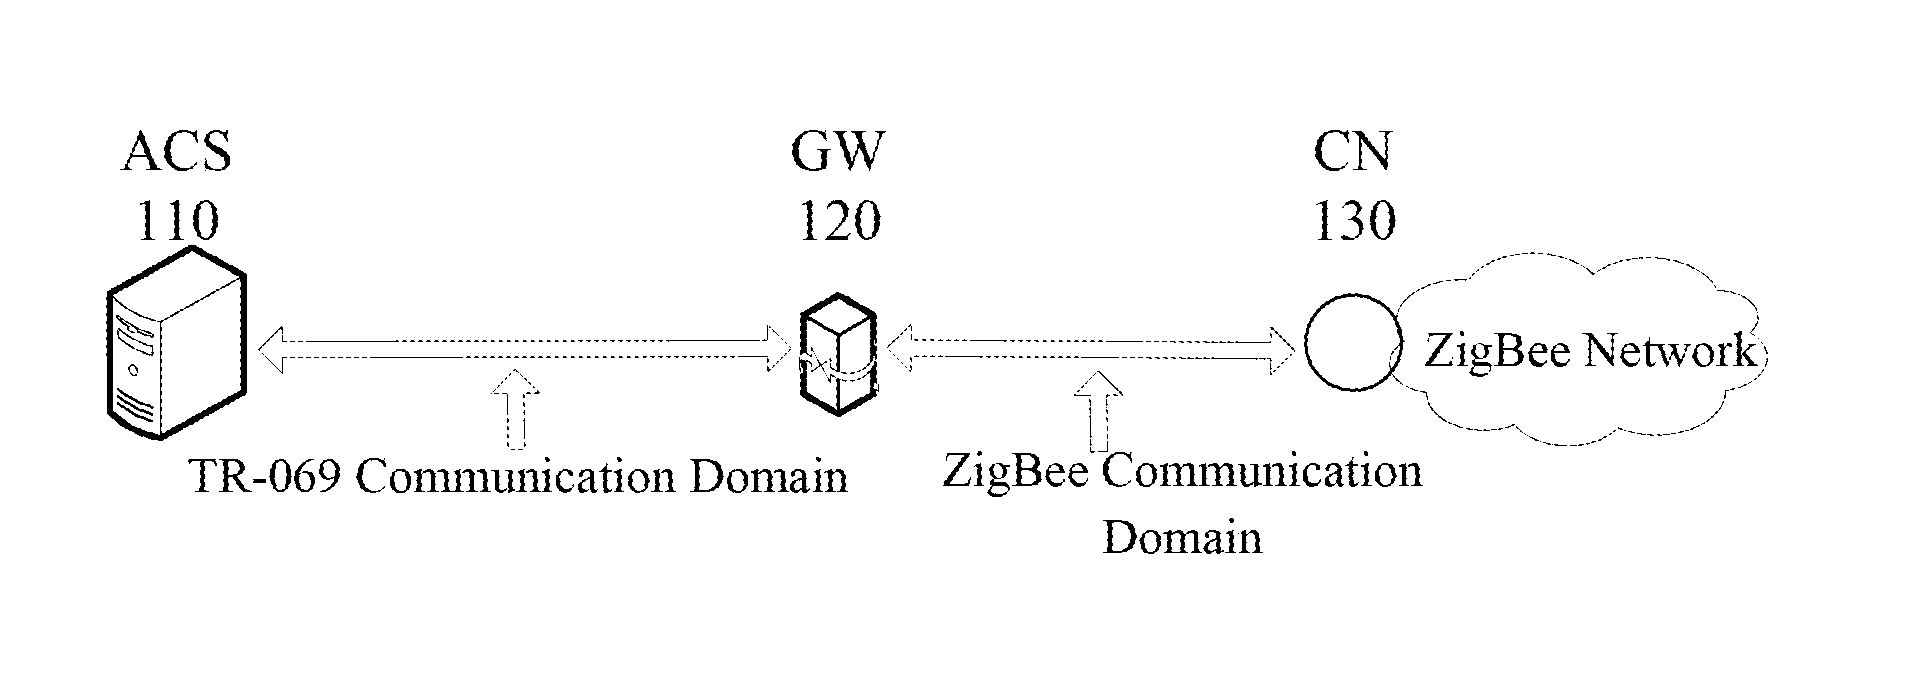 Method of managing zigbee network in the internet of things